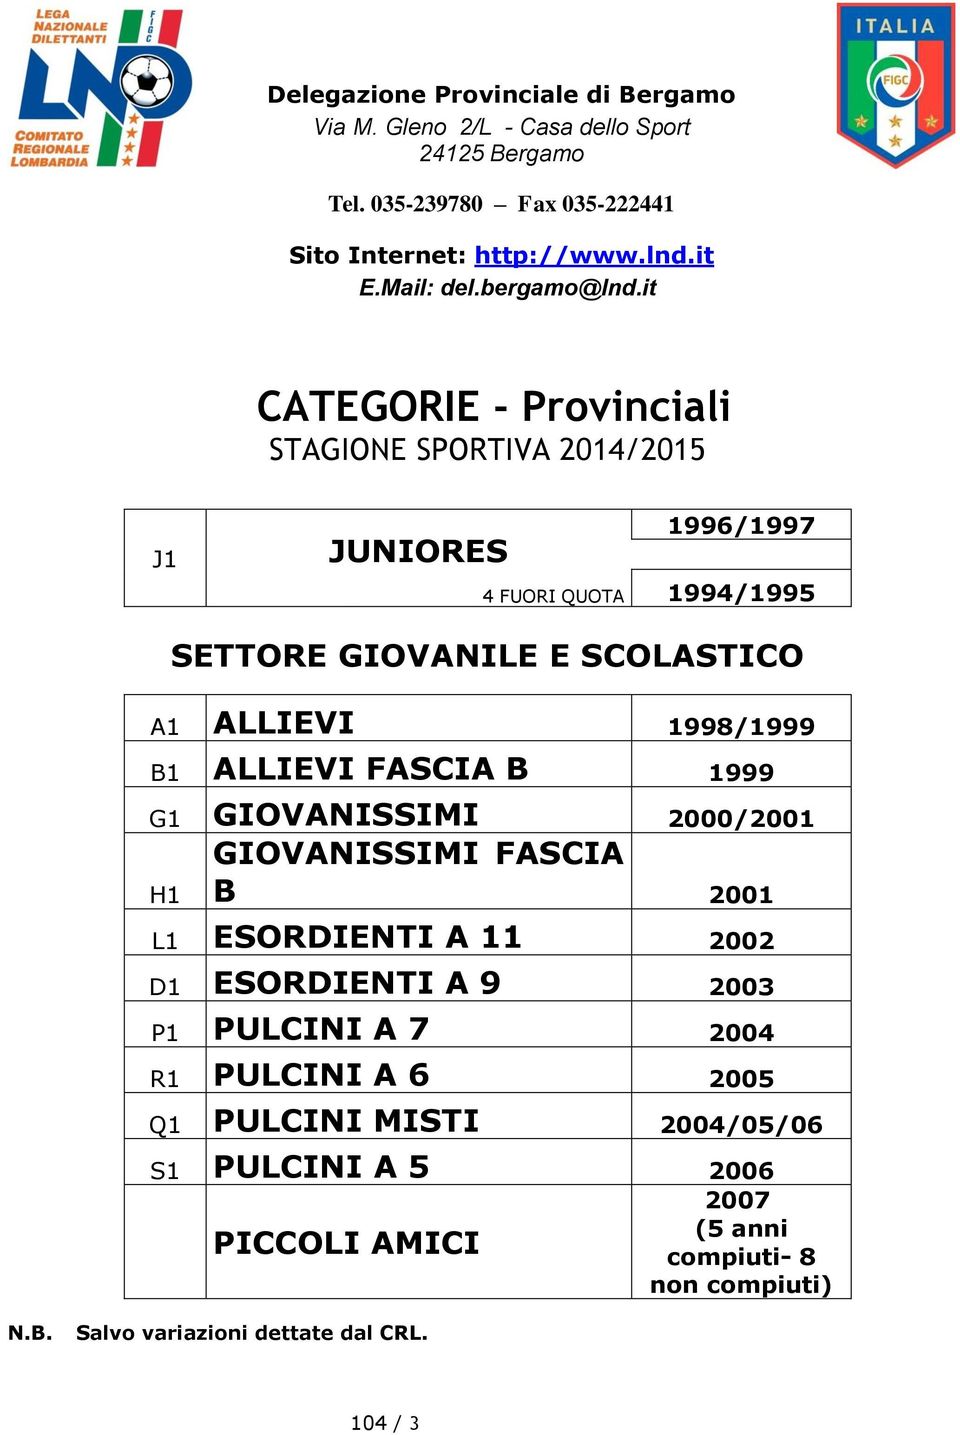 itstagione CATEGORIE - Provinciali STAGIONE SPORTIVA 2014/2015 J1 JUNIORES 1996/1997 4 FUORI QUOTA 1994/1995 SETTORE GIOVANILE E SCOLASTICO A1 ALLIEVI 1998/1999